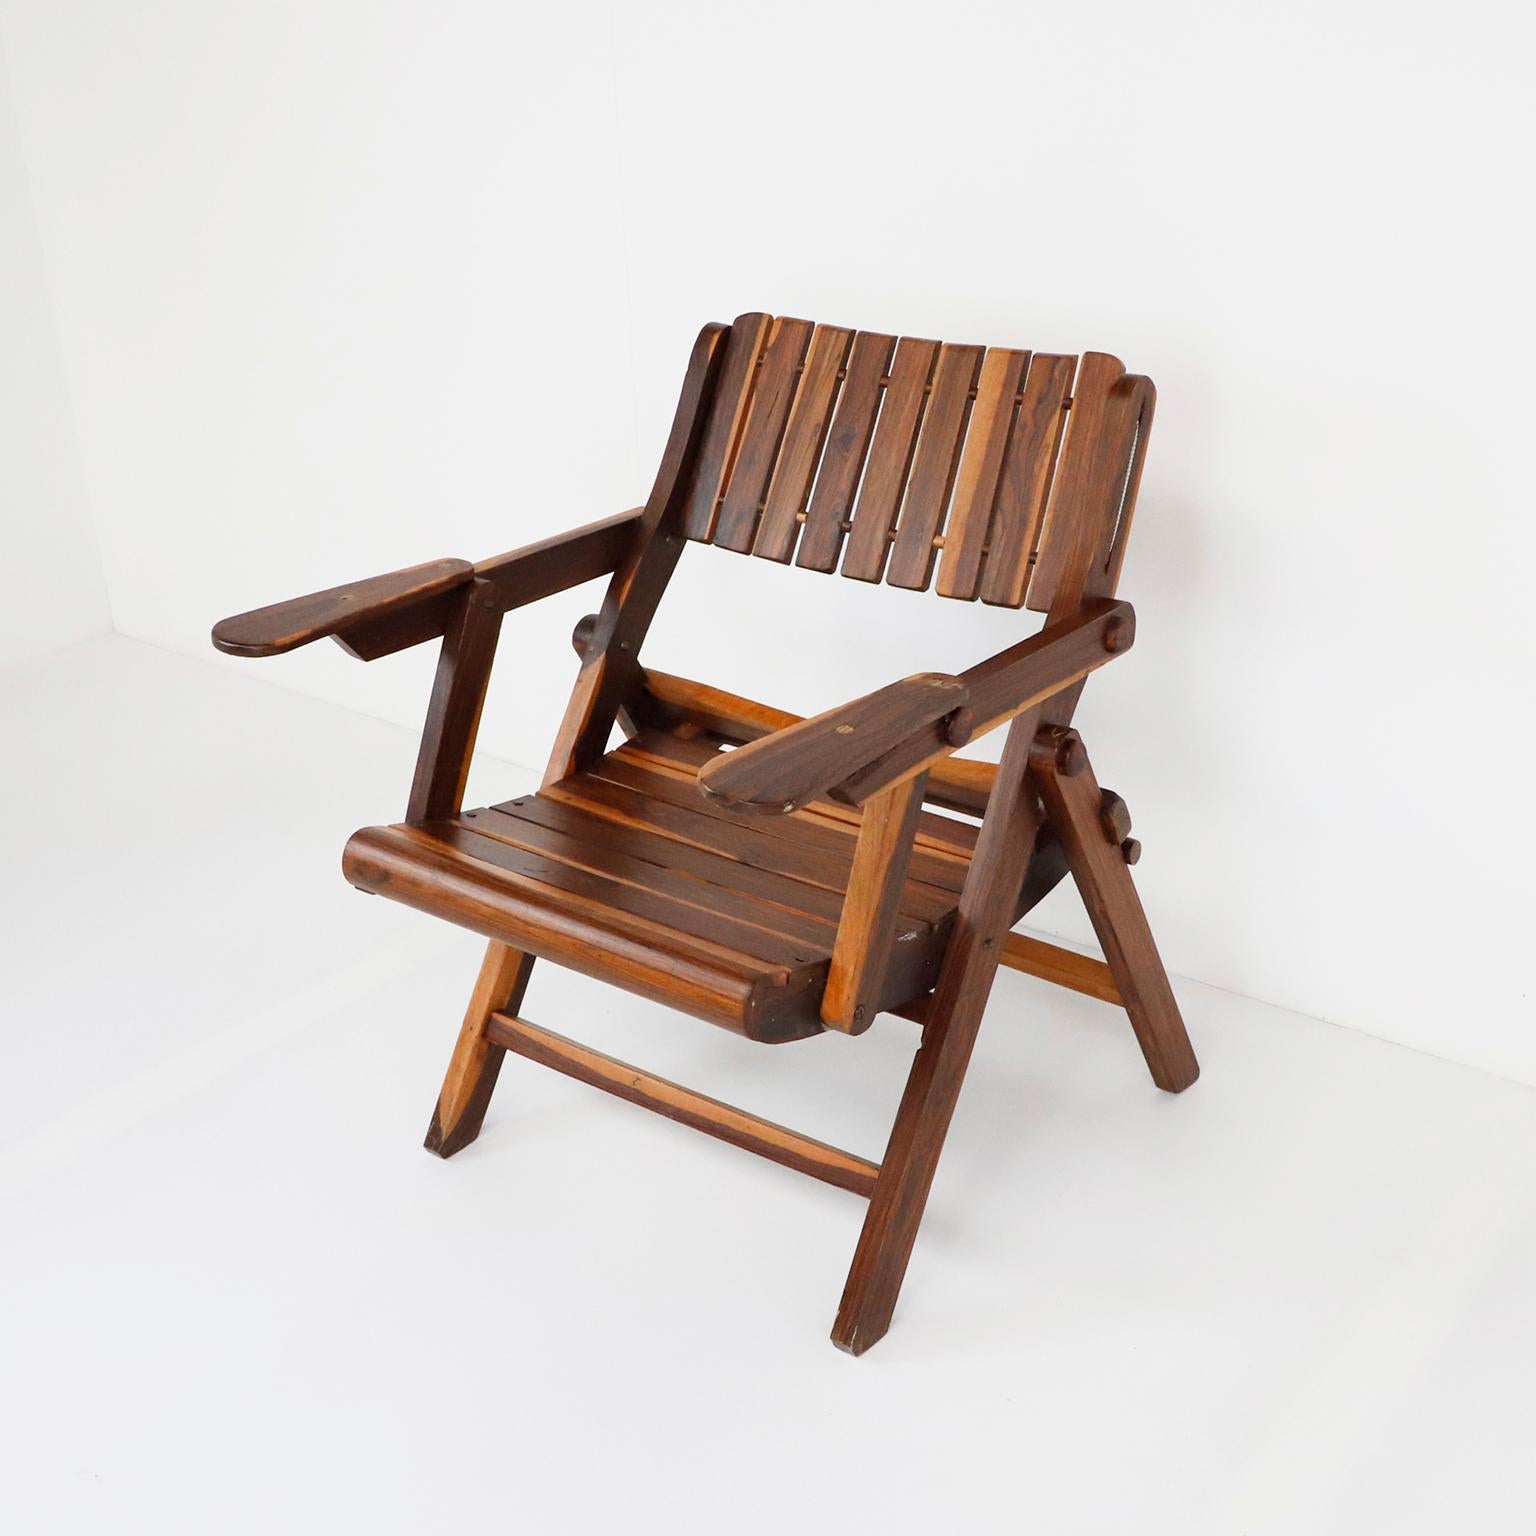 Circa 1970. Nous vous proposons cet antique fauteuil pliant mexicain en bois massif de Cocobolo.